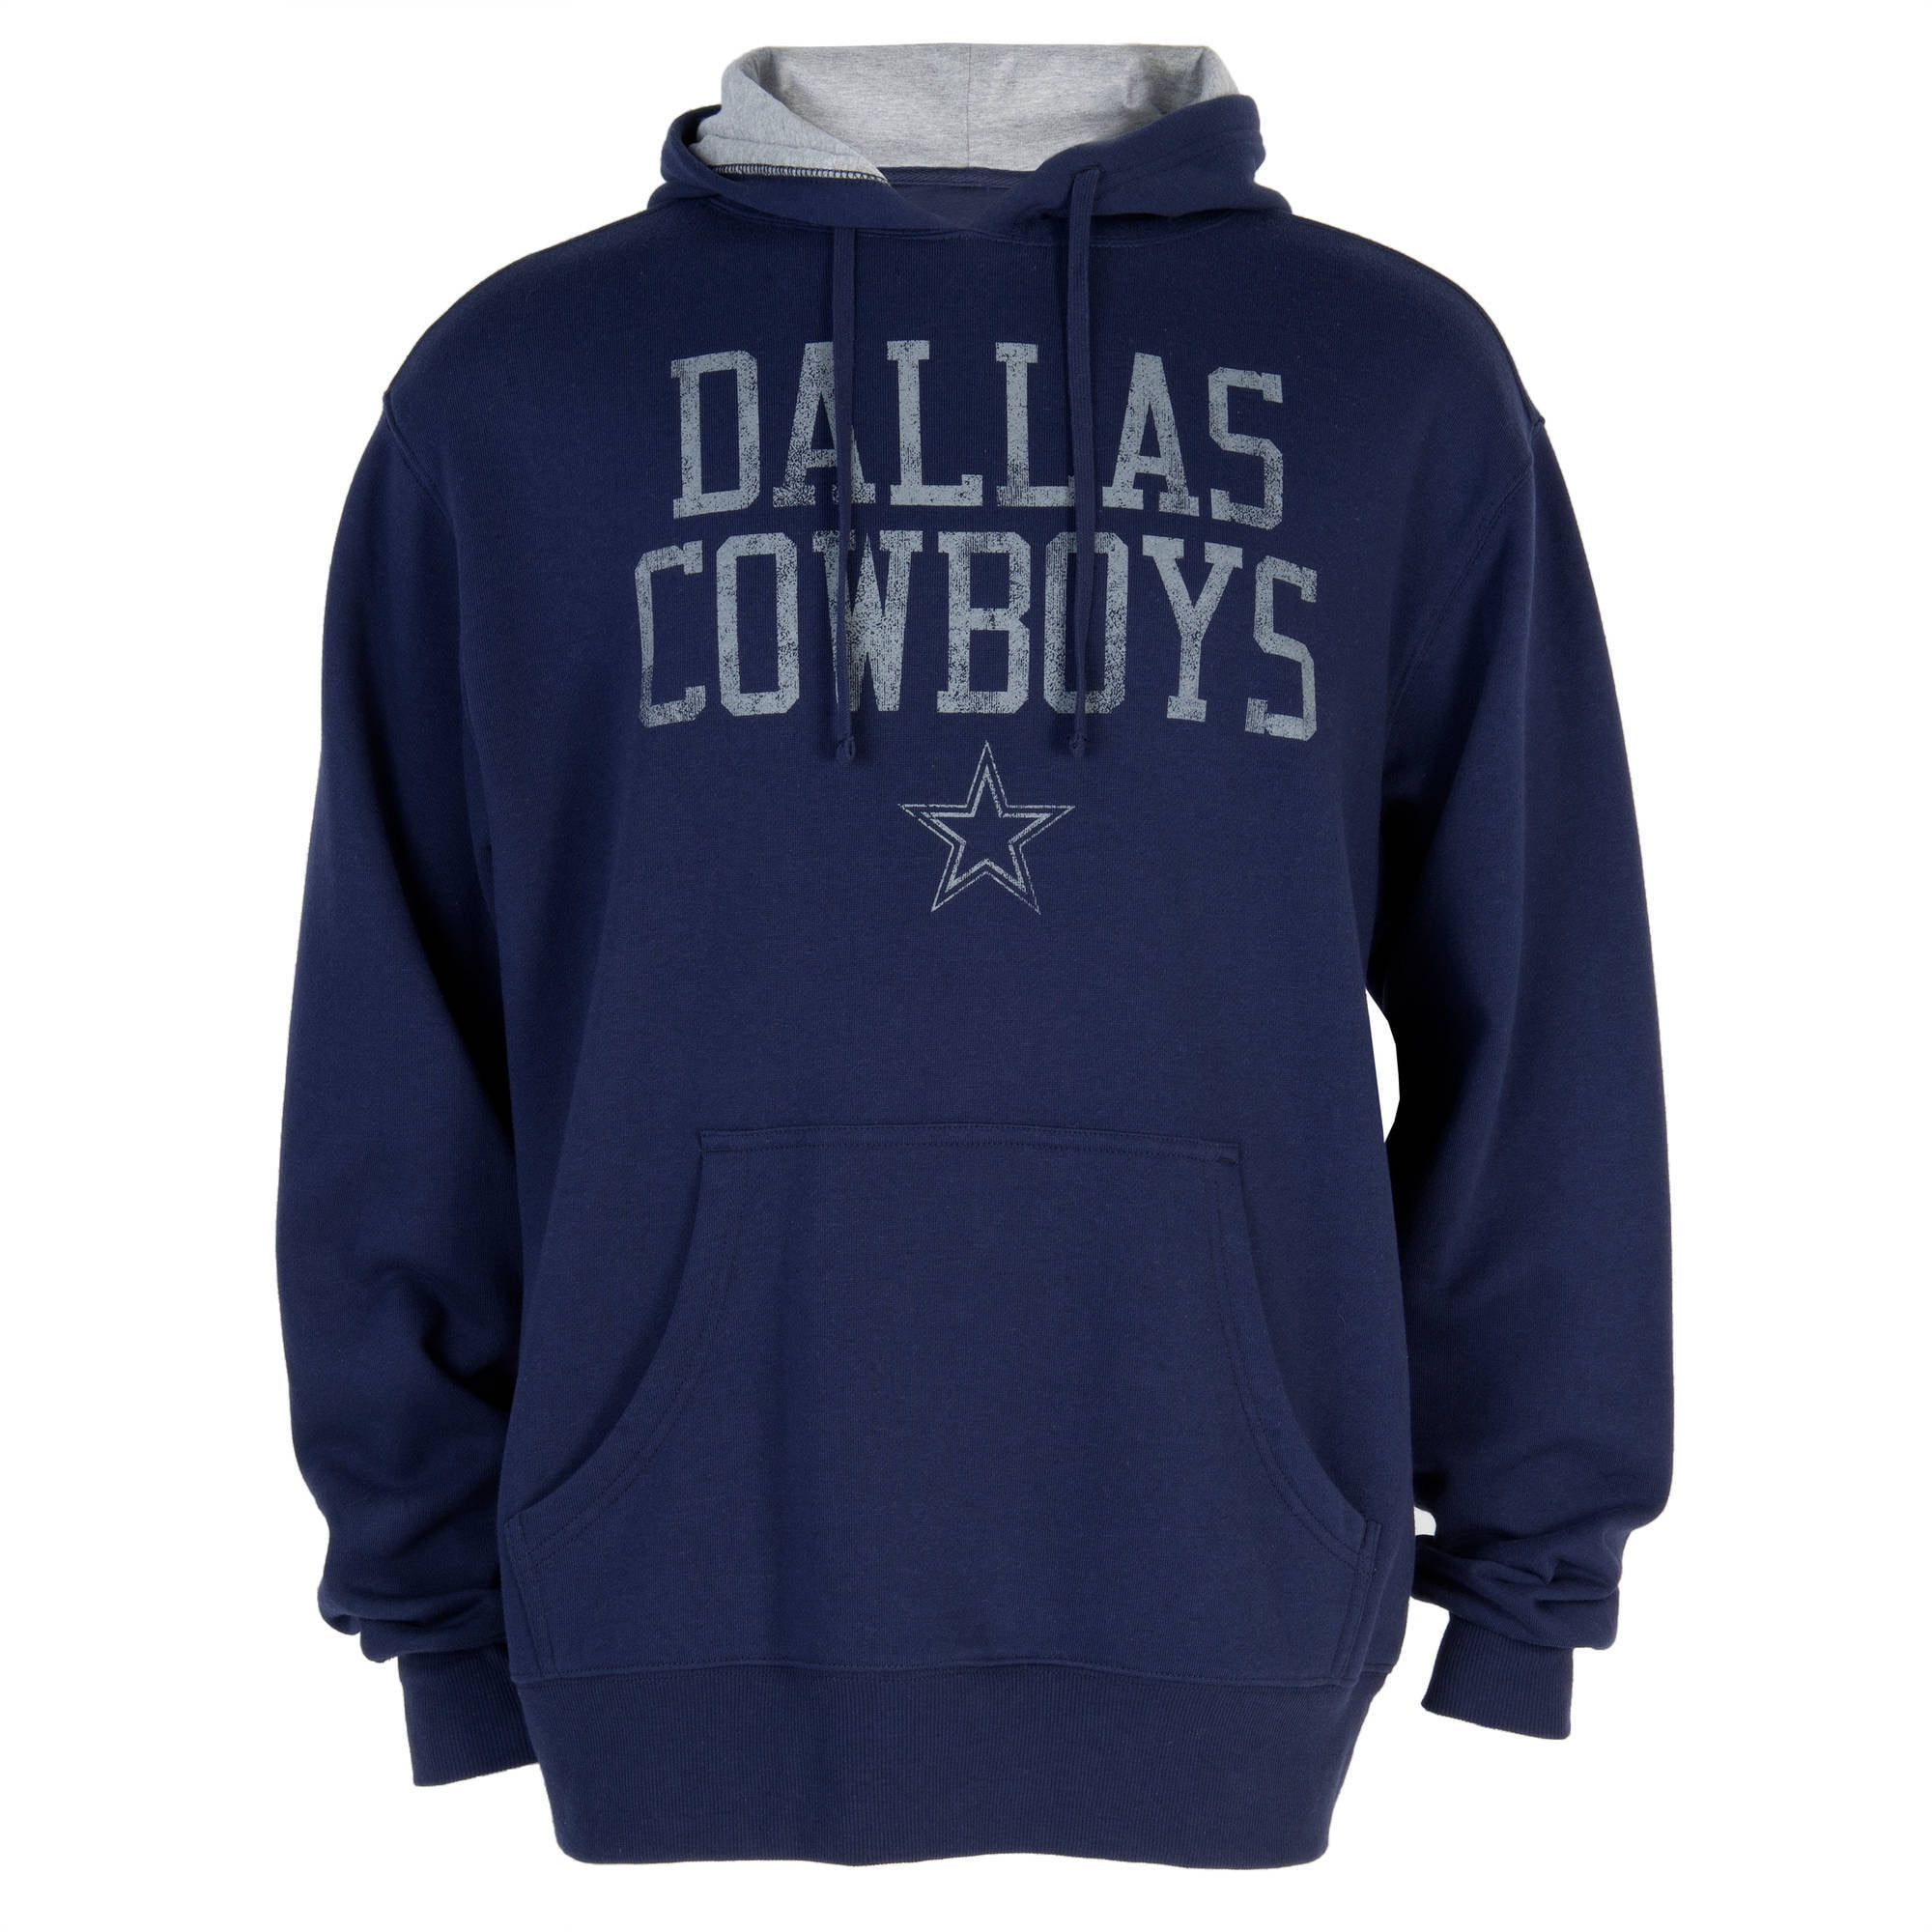 NFL Dallas Cowboys Men's Hoodies 